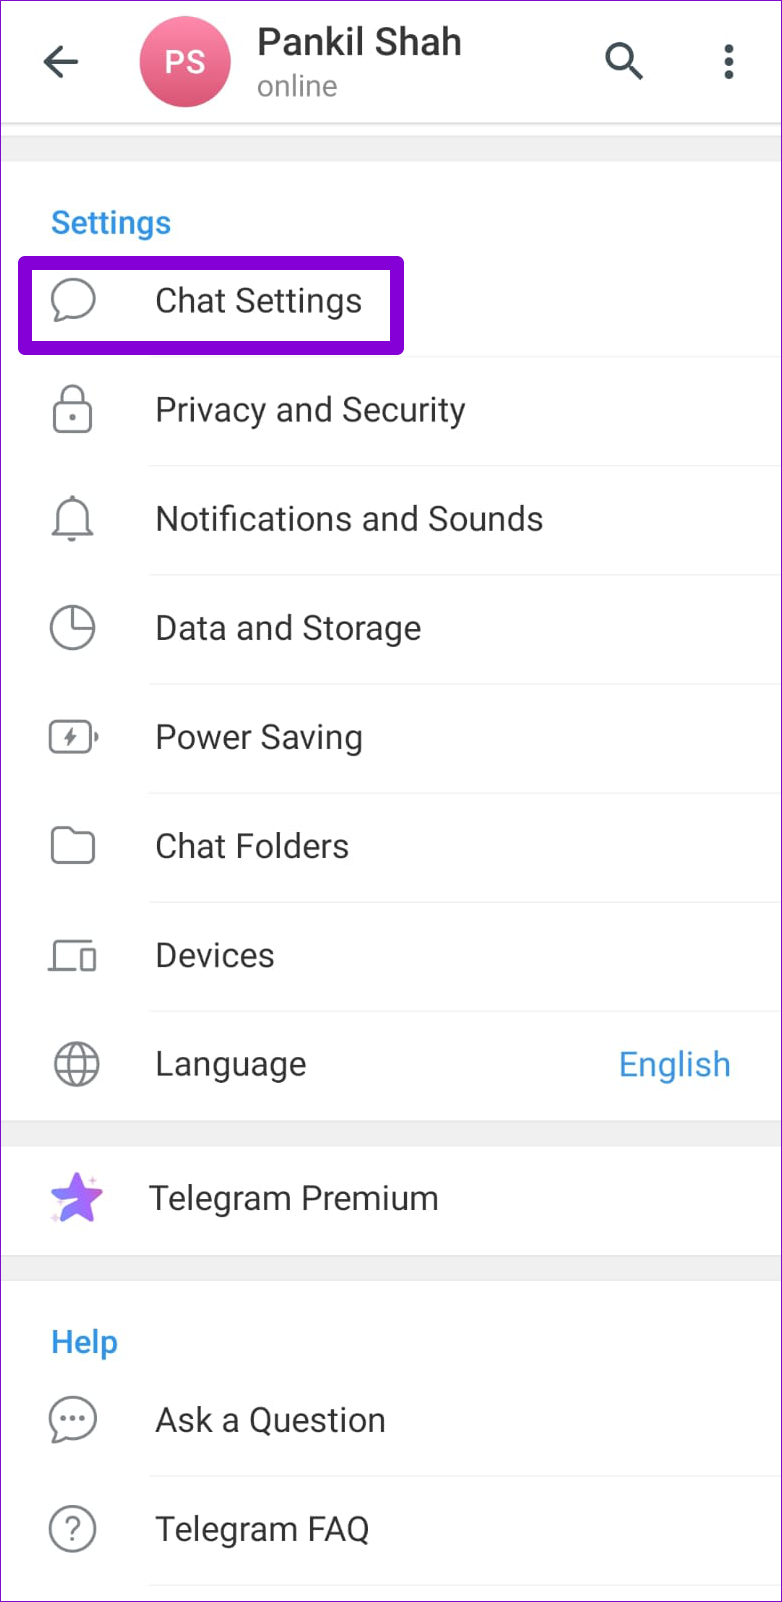 Chat Settings in Telegram